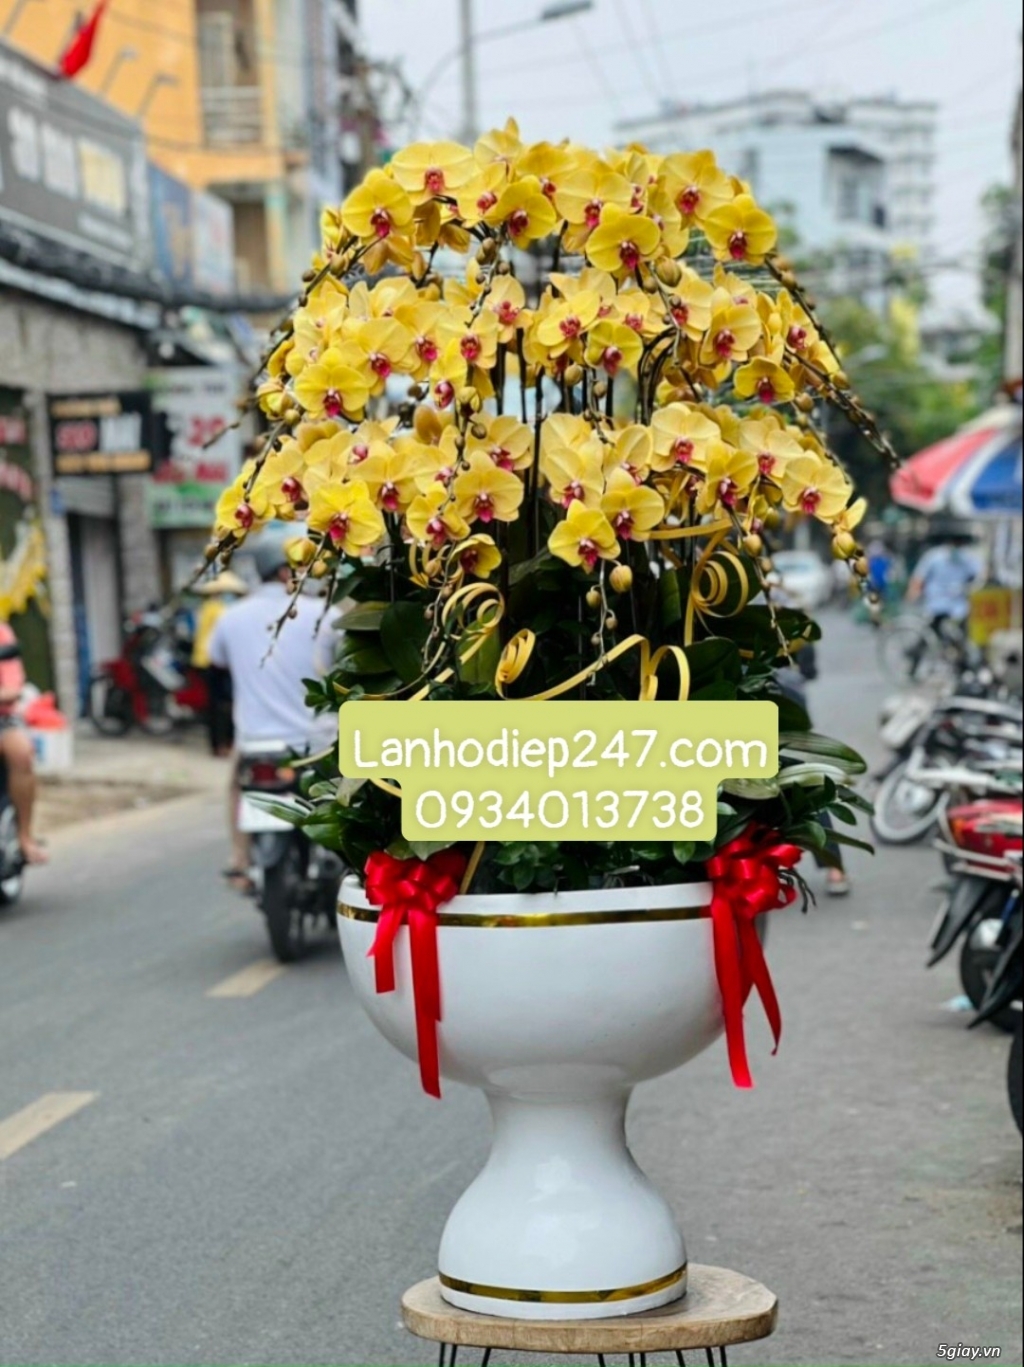 Shop hoa bán lan hồ điệp đẹp uy tín hút khách nhất tphcm - Hoatuoi247 - 16